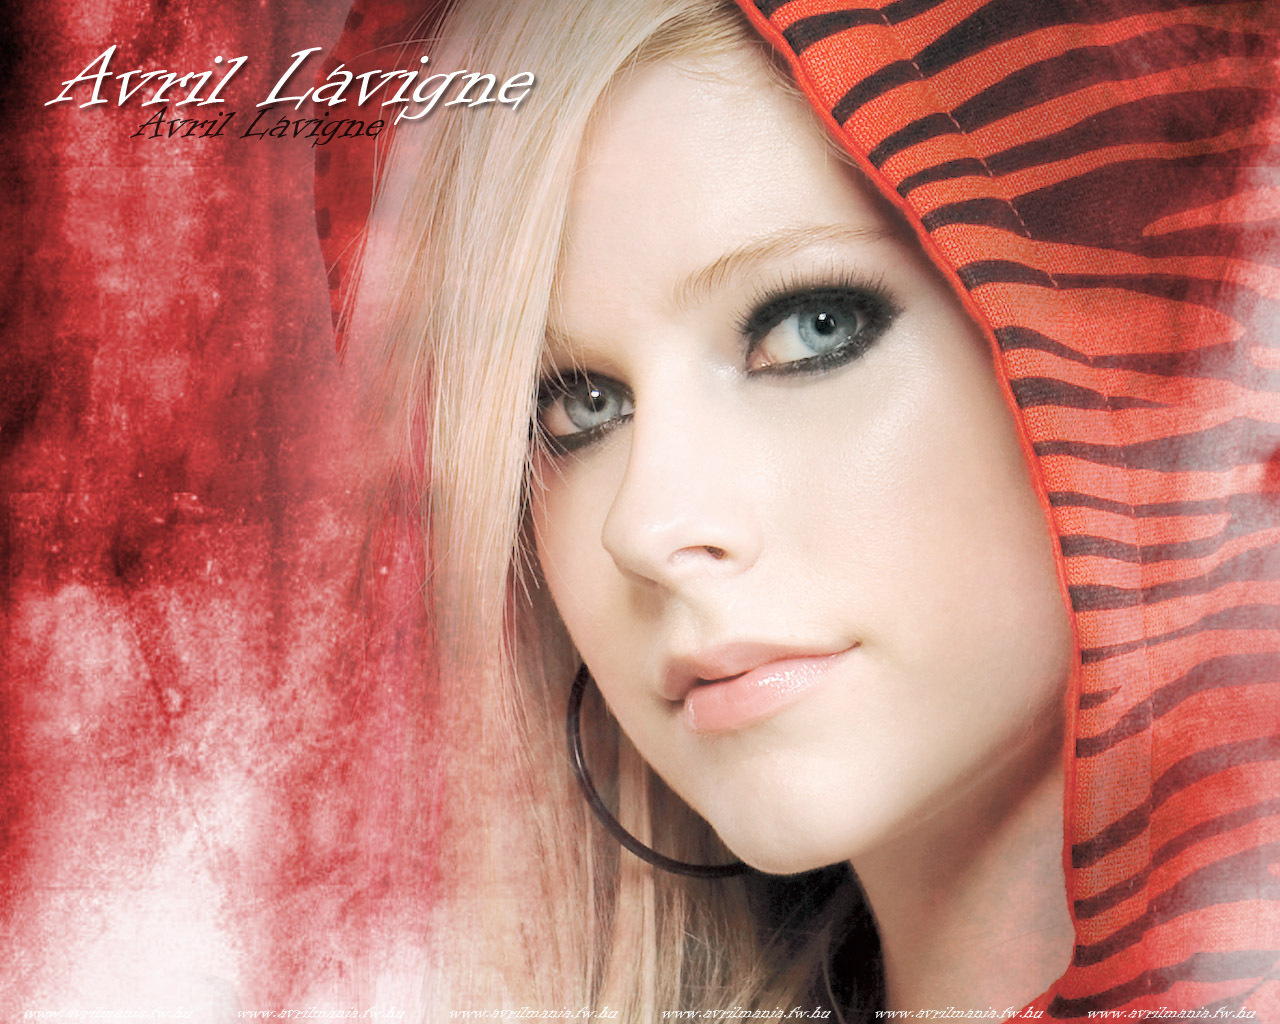 Avril Lavigne Avril Lavign3 - Avril-Lavign3-avril-lavigne-8144978-1280-1024